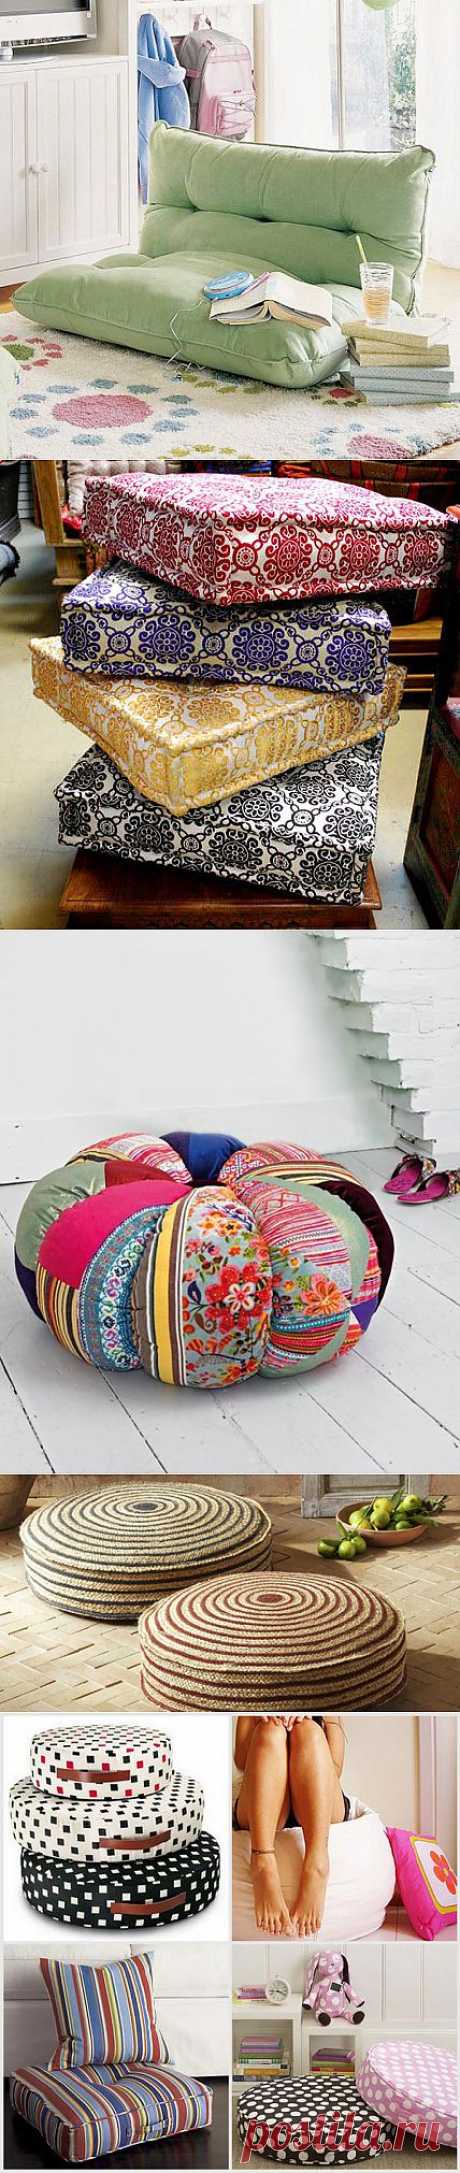 Развалившись на полу - напольные подушки для комфорта | Фотографии красивых интерьеров